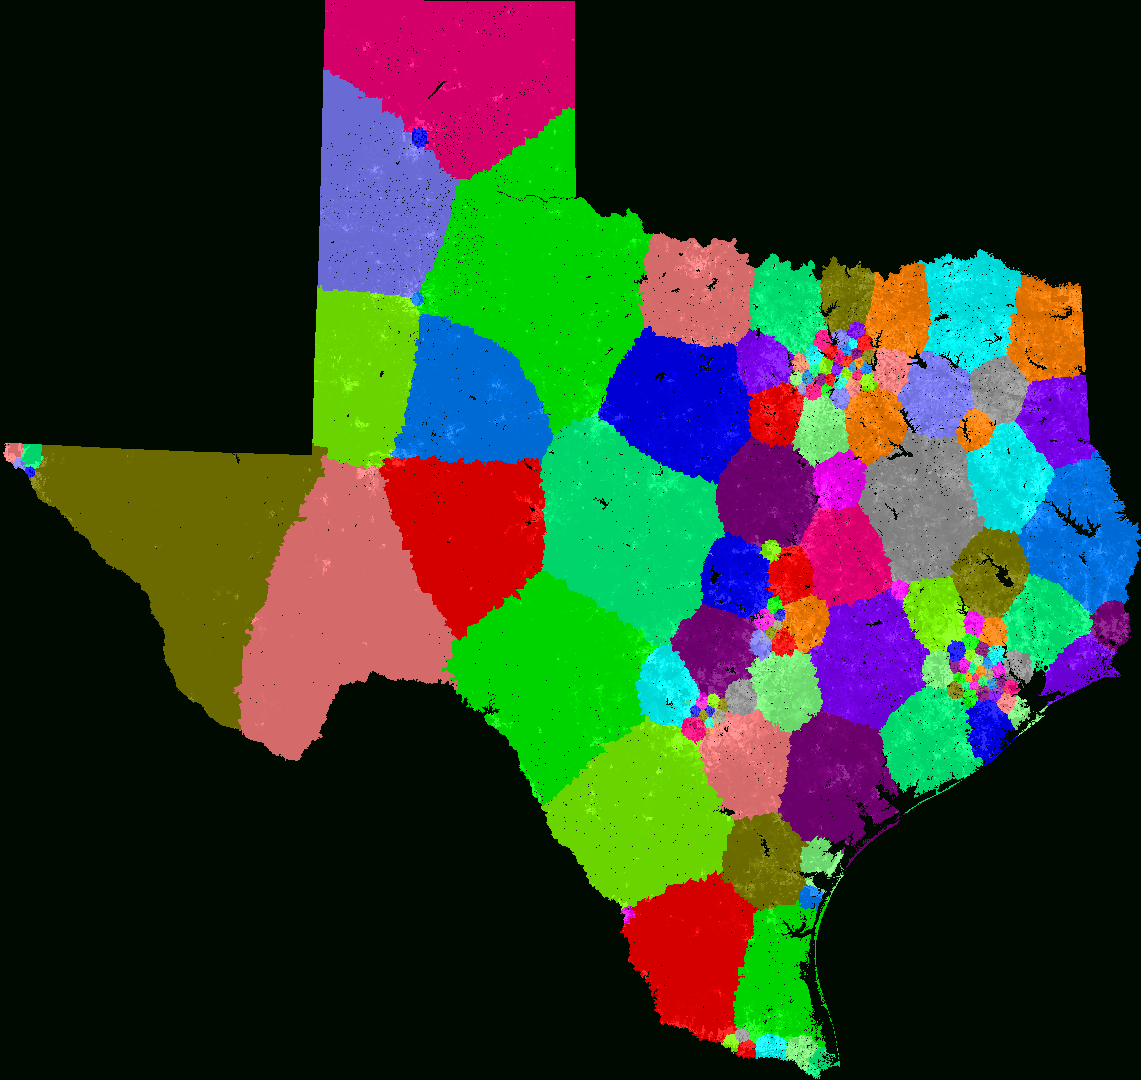 Texas House Of Representatives Redistricting - Texas Representatives Map